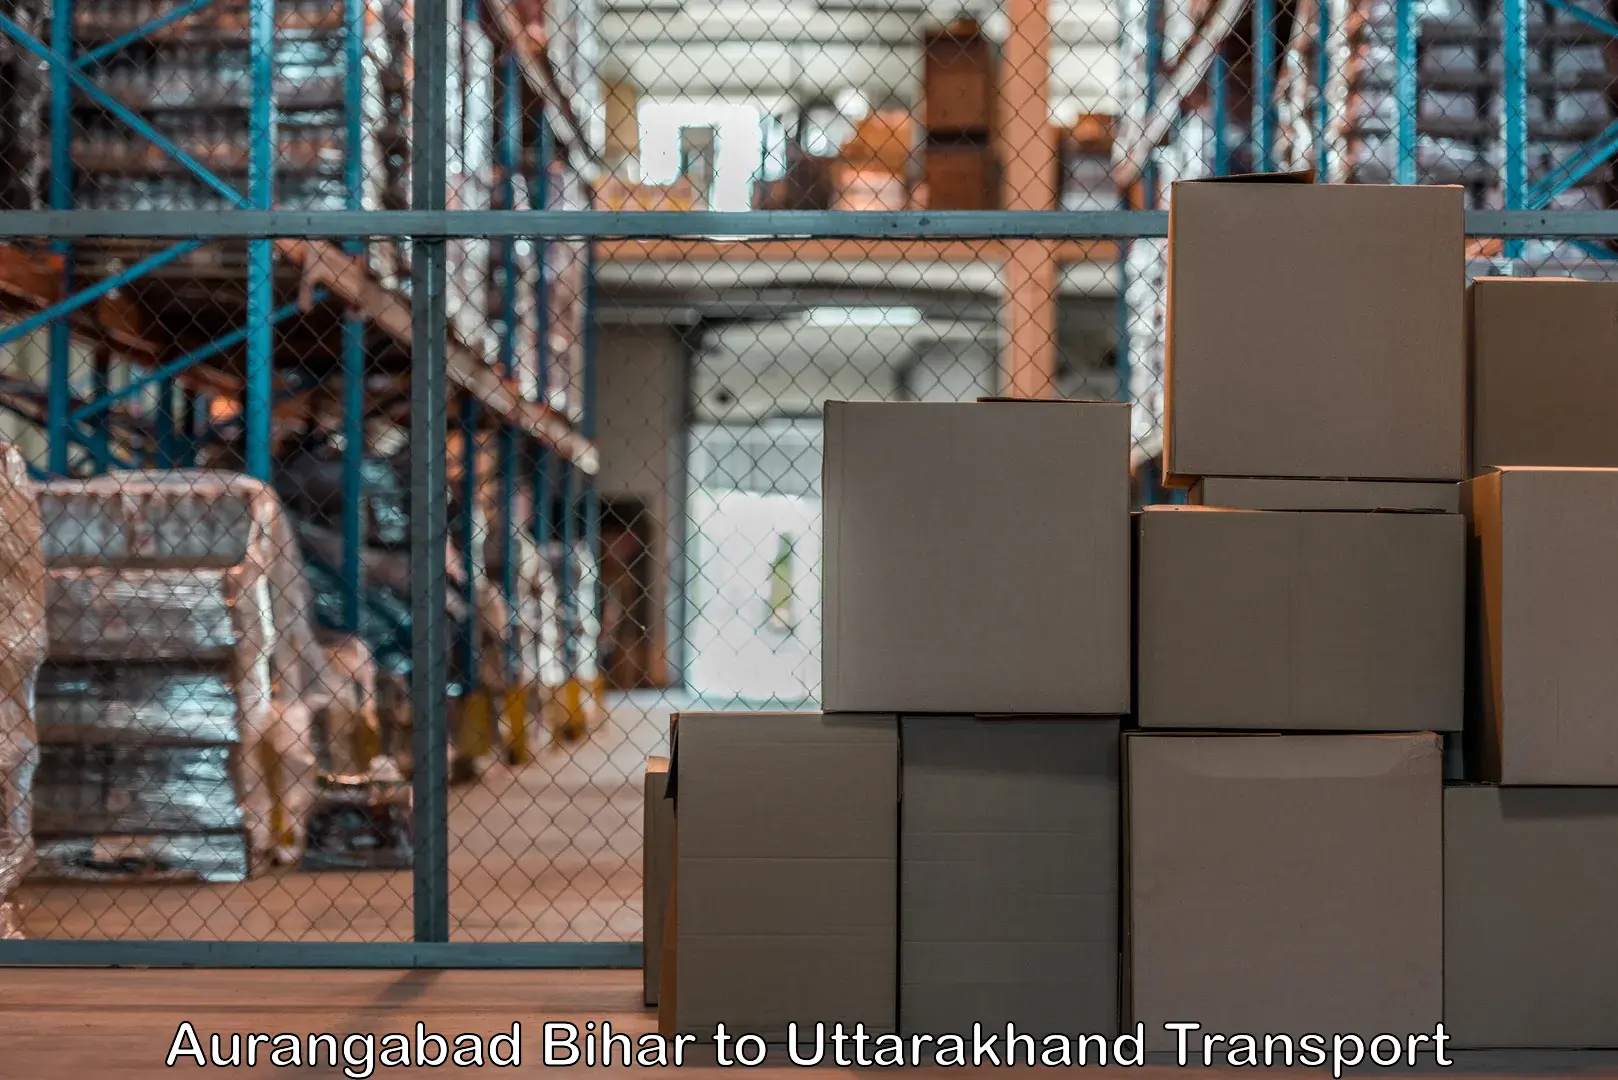 Air freight transport services Aurangabad Bihar to Tehri Garhwal